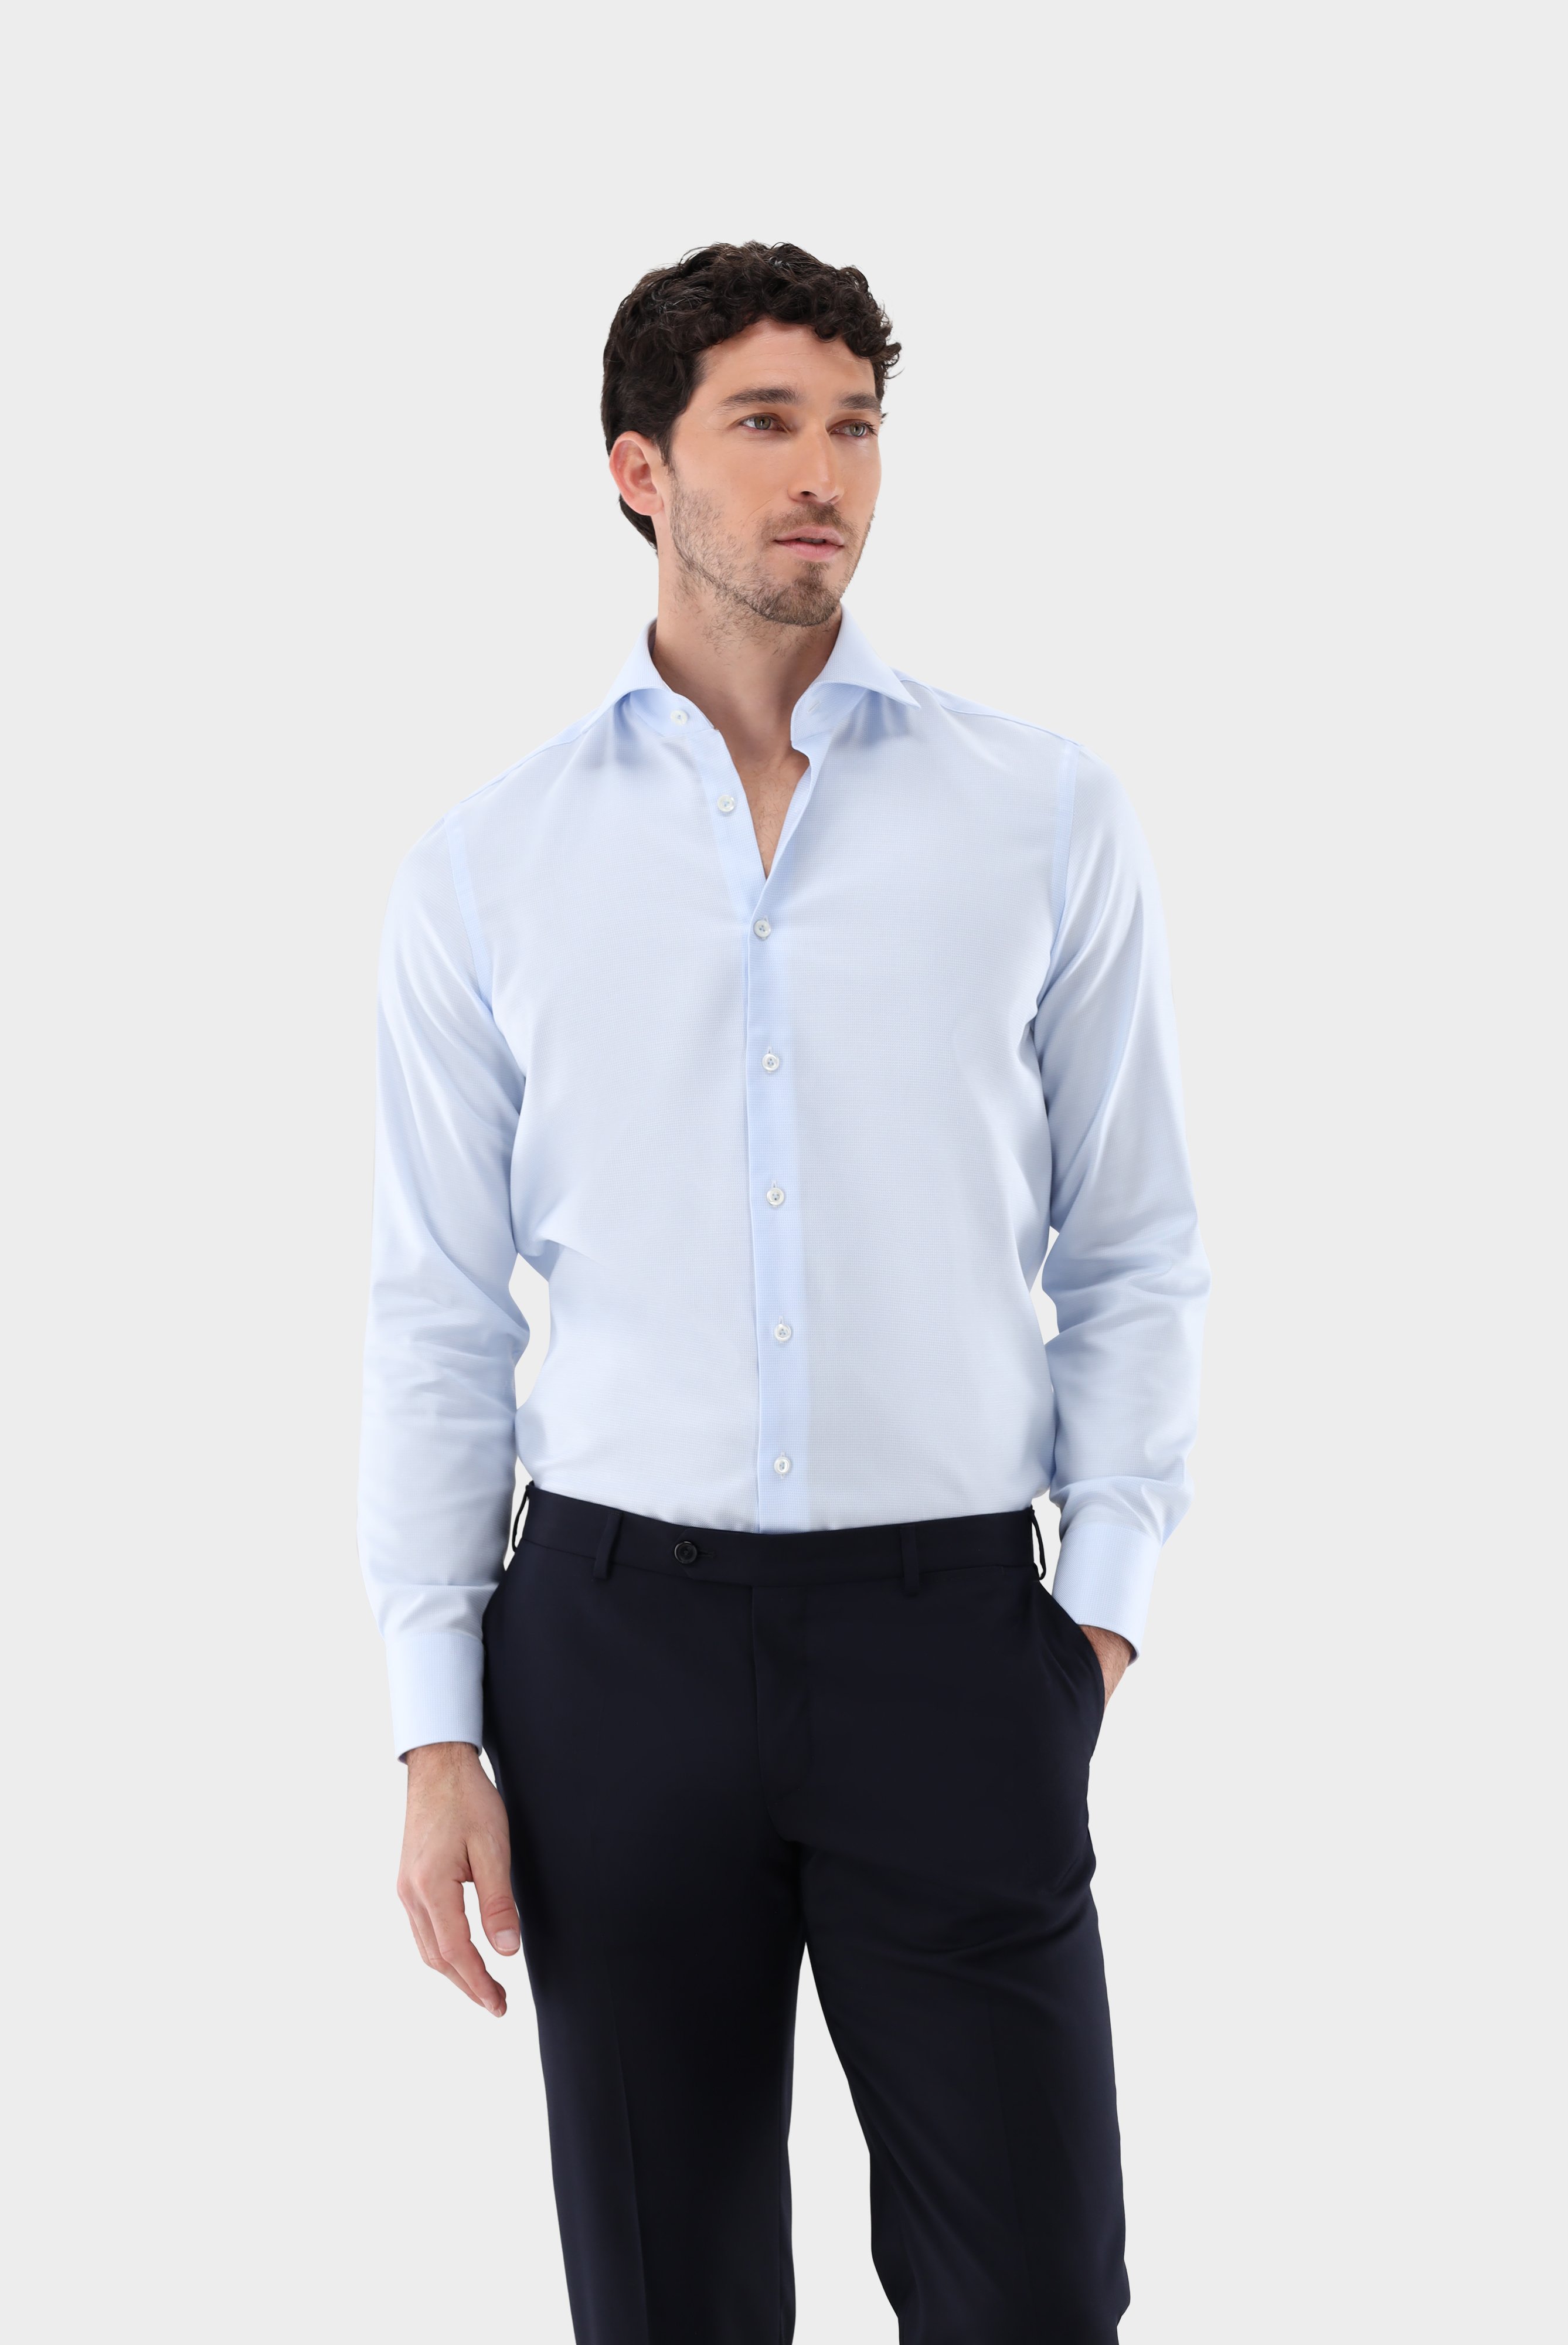 Business Hemden+Twill Hemd mit Struktur Tailor Fit+20.2020.AV.161265.710.44